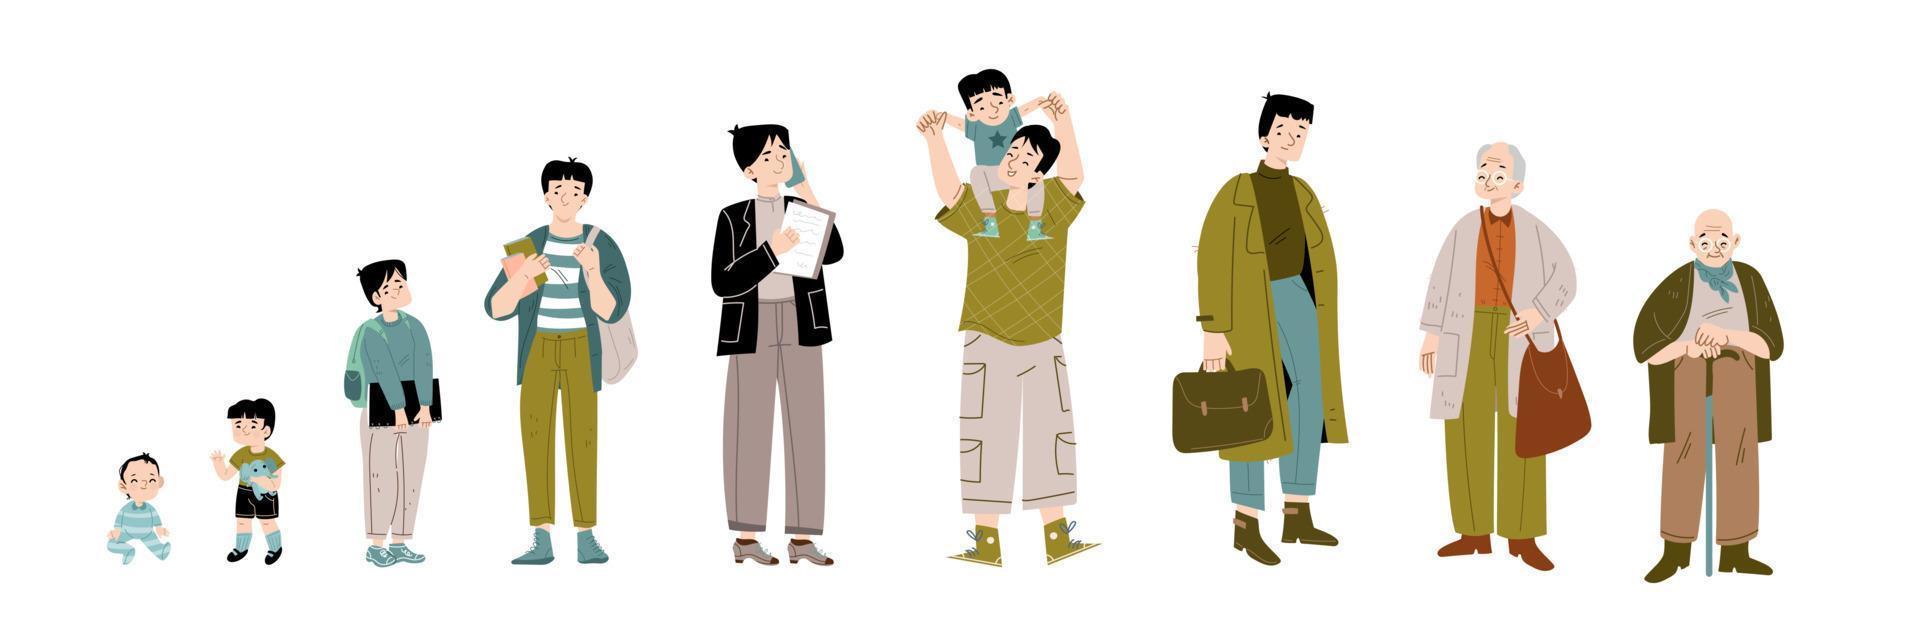 ciclo de vida do homem asiático desde a idade infantil até a velhice vetor